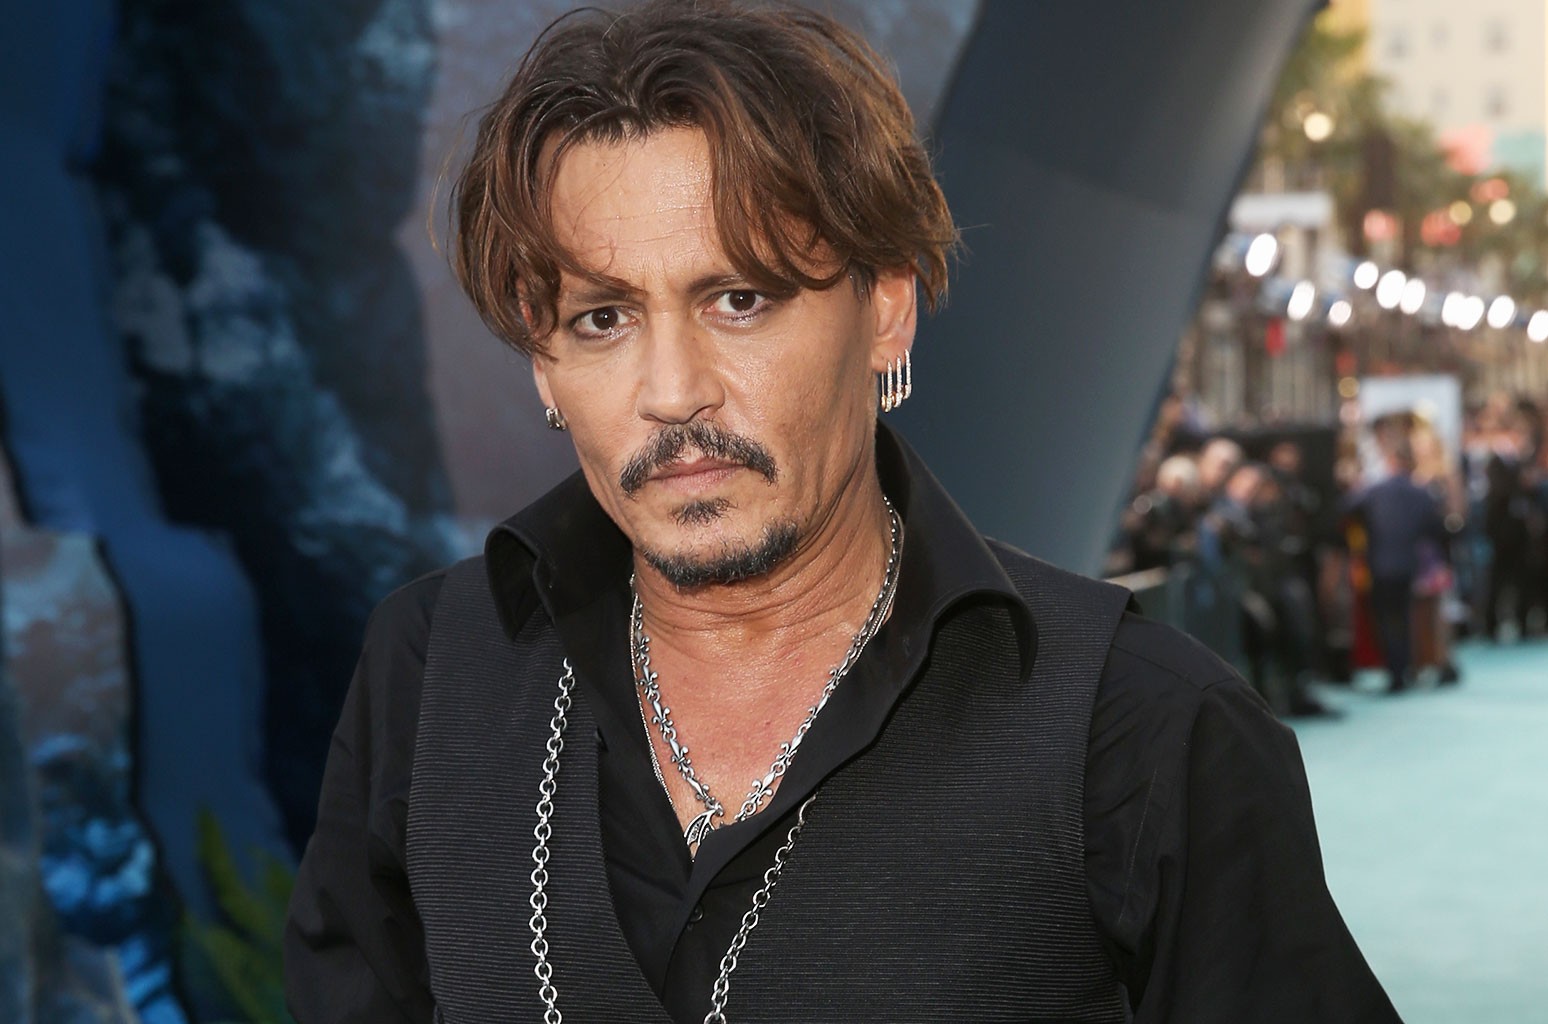 Filha de Johnny Depp rouba a cena com beleza em fotos; veja